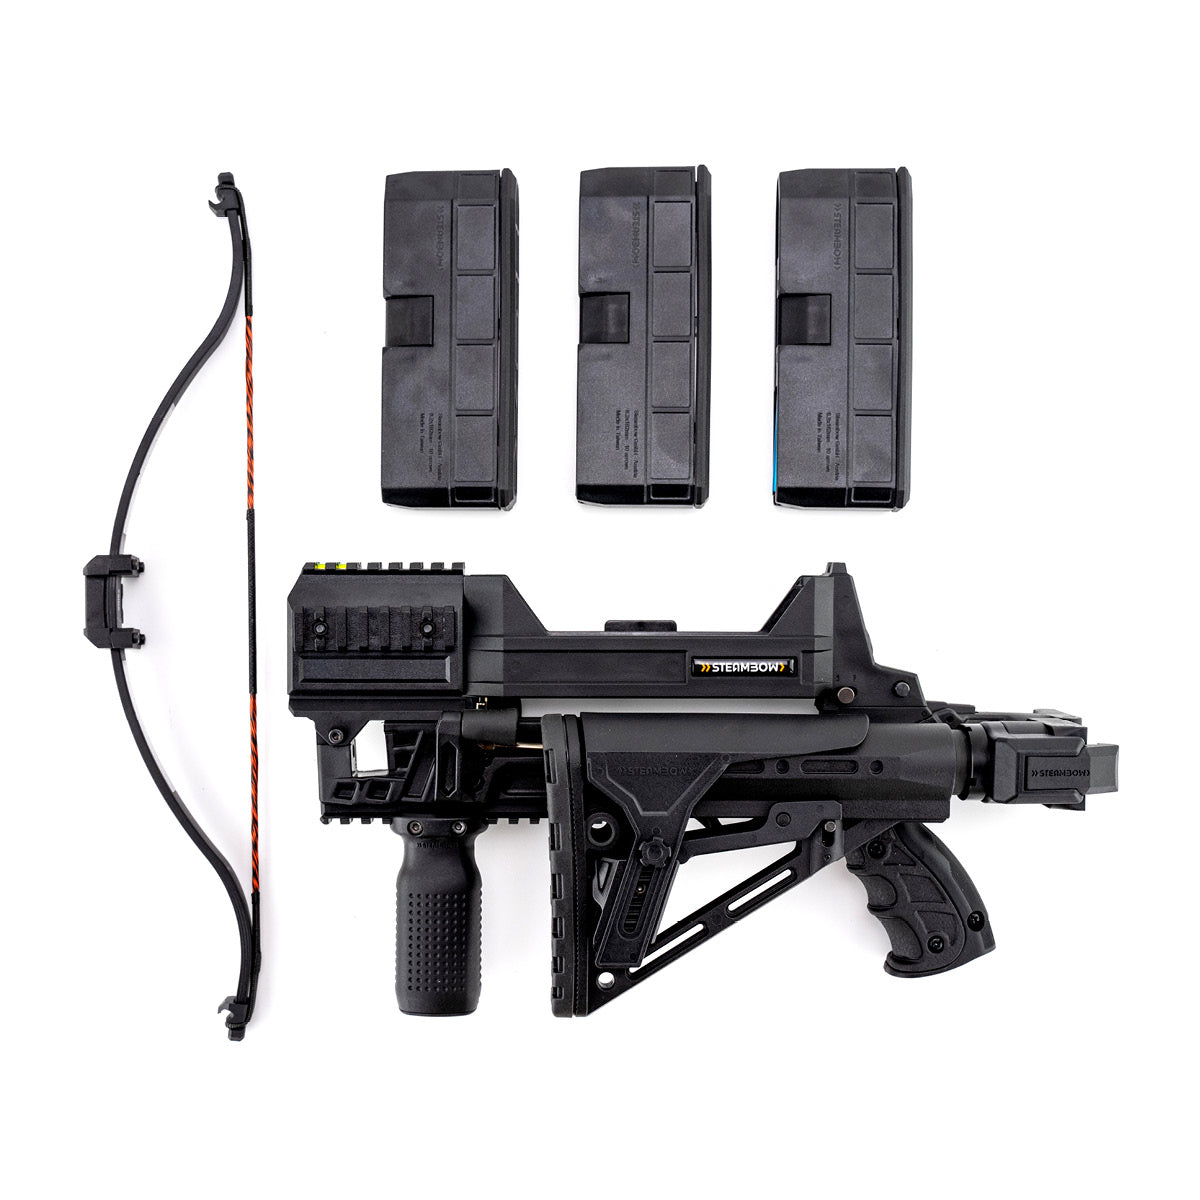 Serie AR - Set completo M10 Tactical con valigia da trasporto